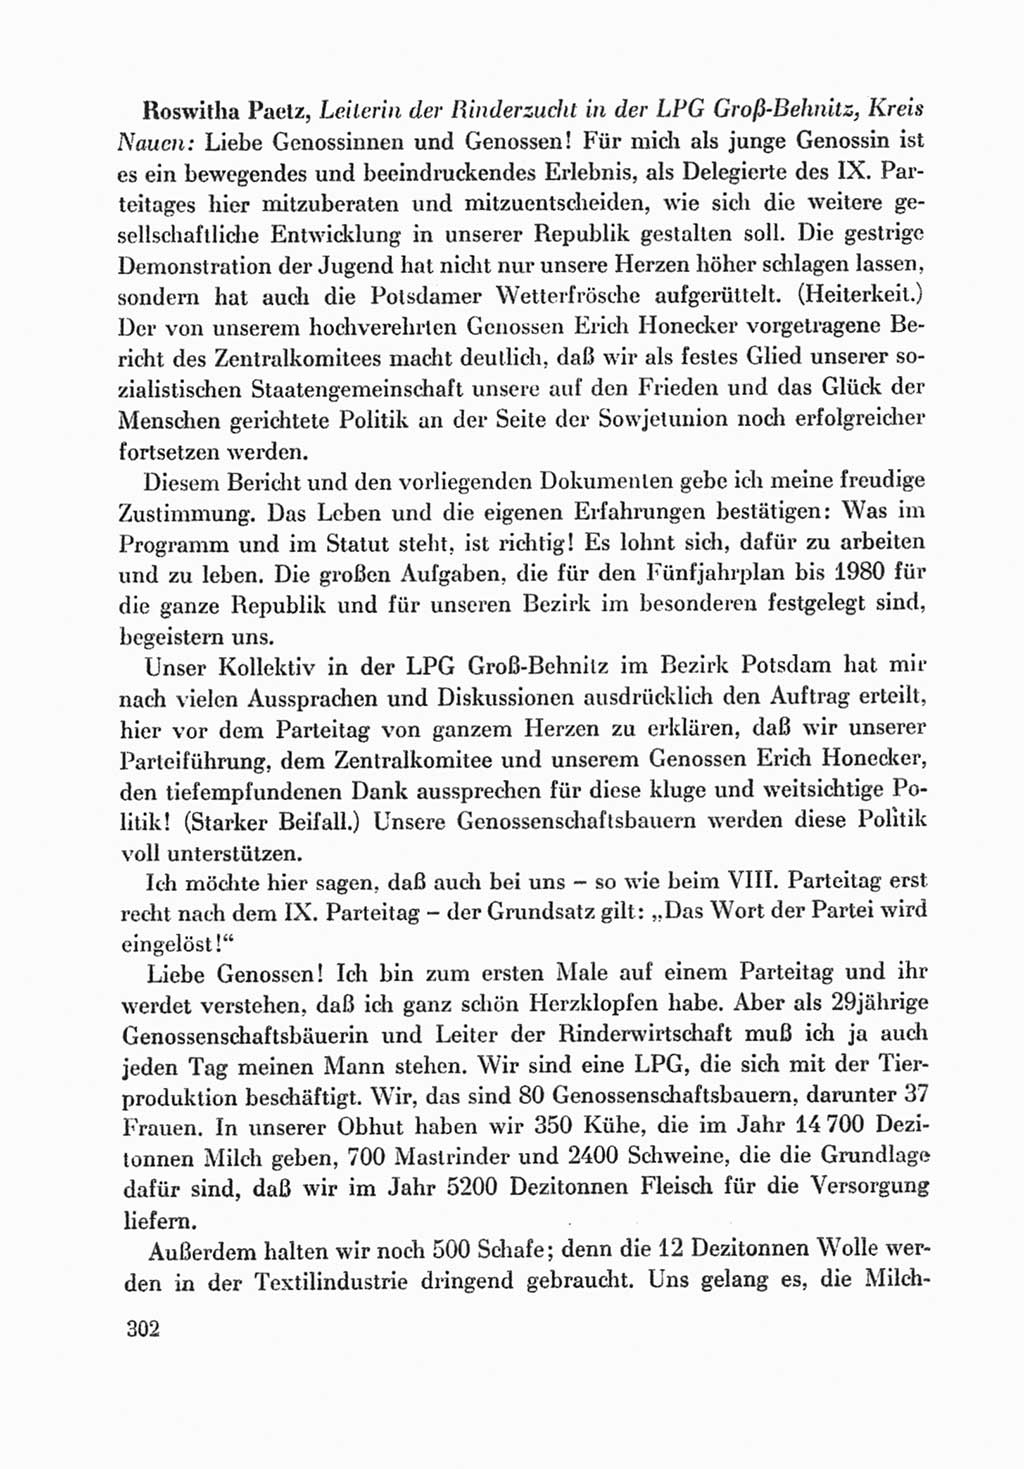 Protokoll der Verhandlungen des Ⅸ. Parteitages der Sozialistischen Einheitspartei Deutschlands (SED) [Deutsche Demokratische Republik (DDR)] 1976, Band 1, Seite 302 (Prot. Verh. Ⅸ. PT SED DDR 1976, Bd. 1, S. 302)